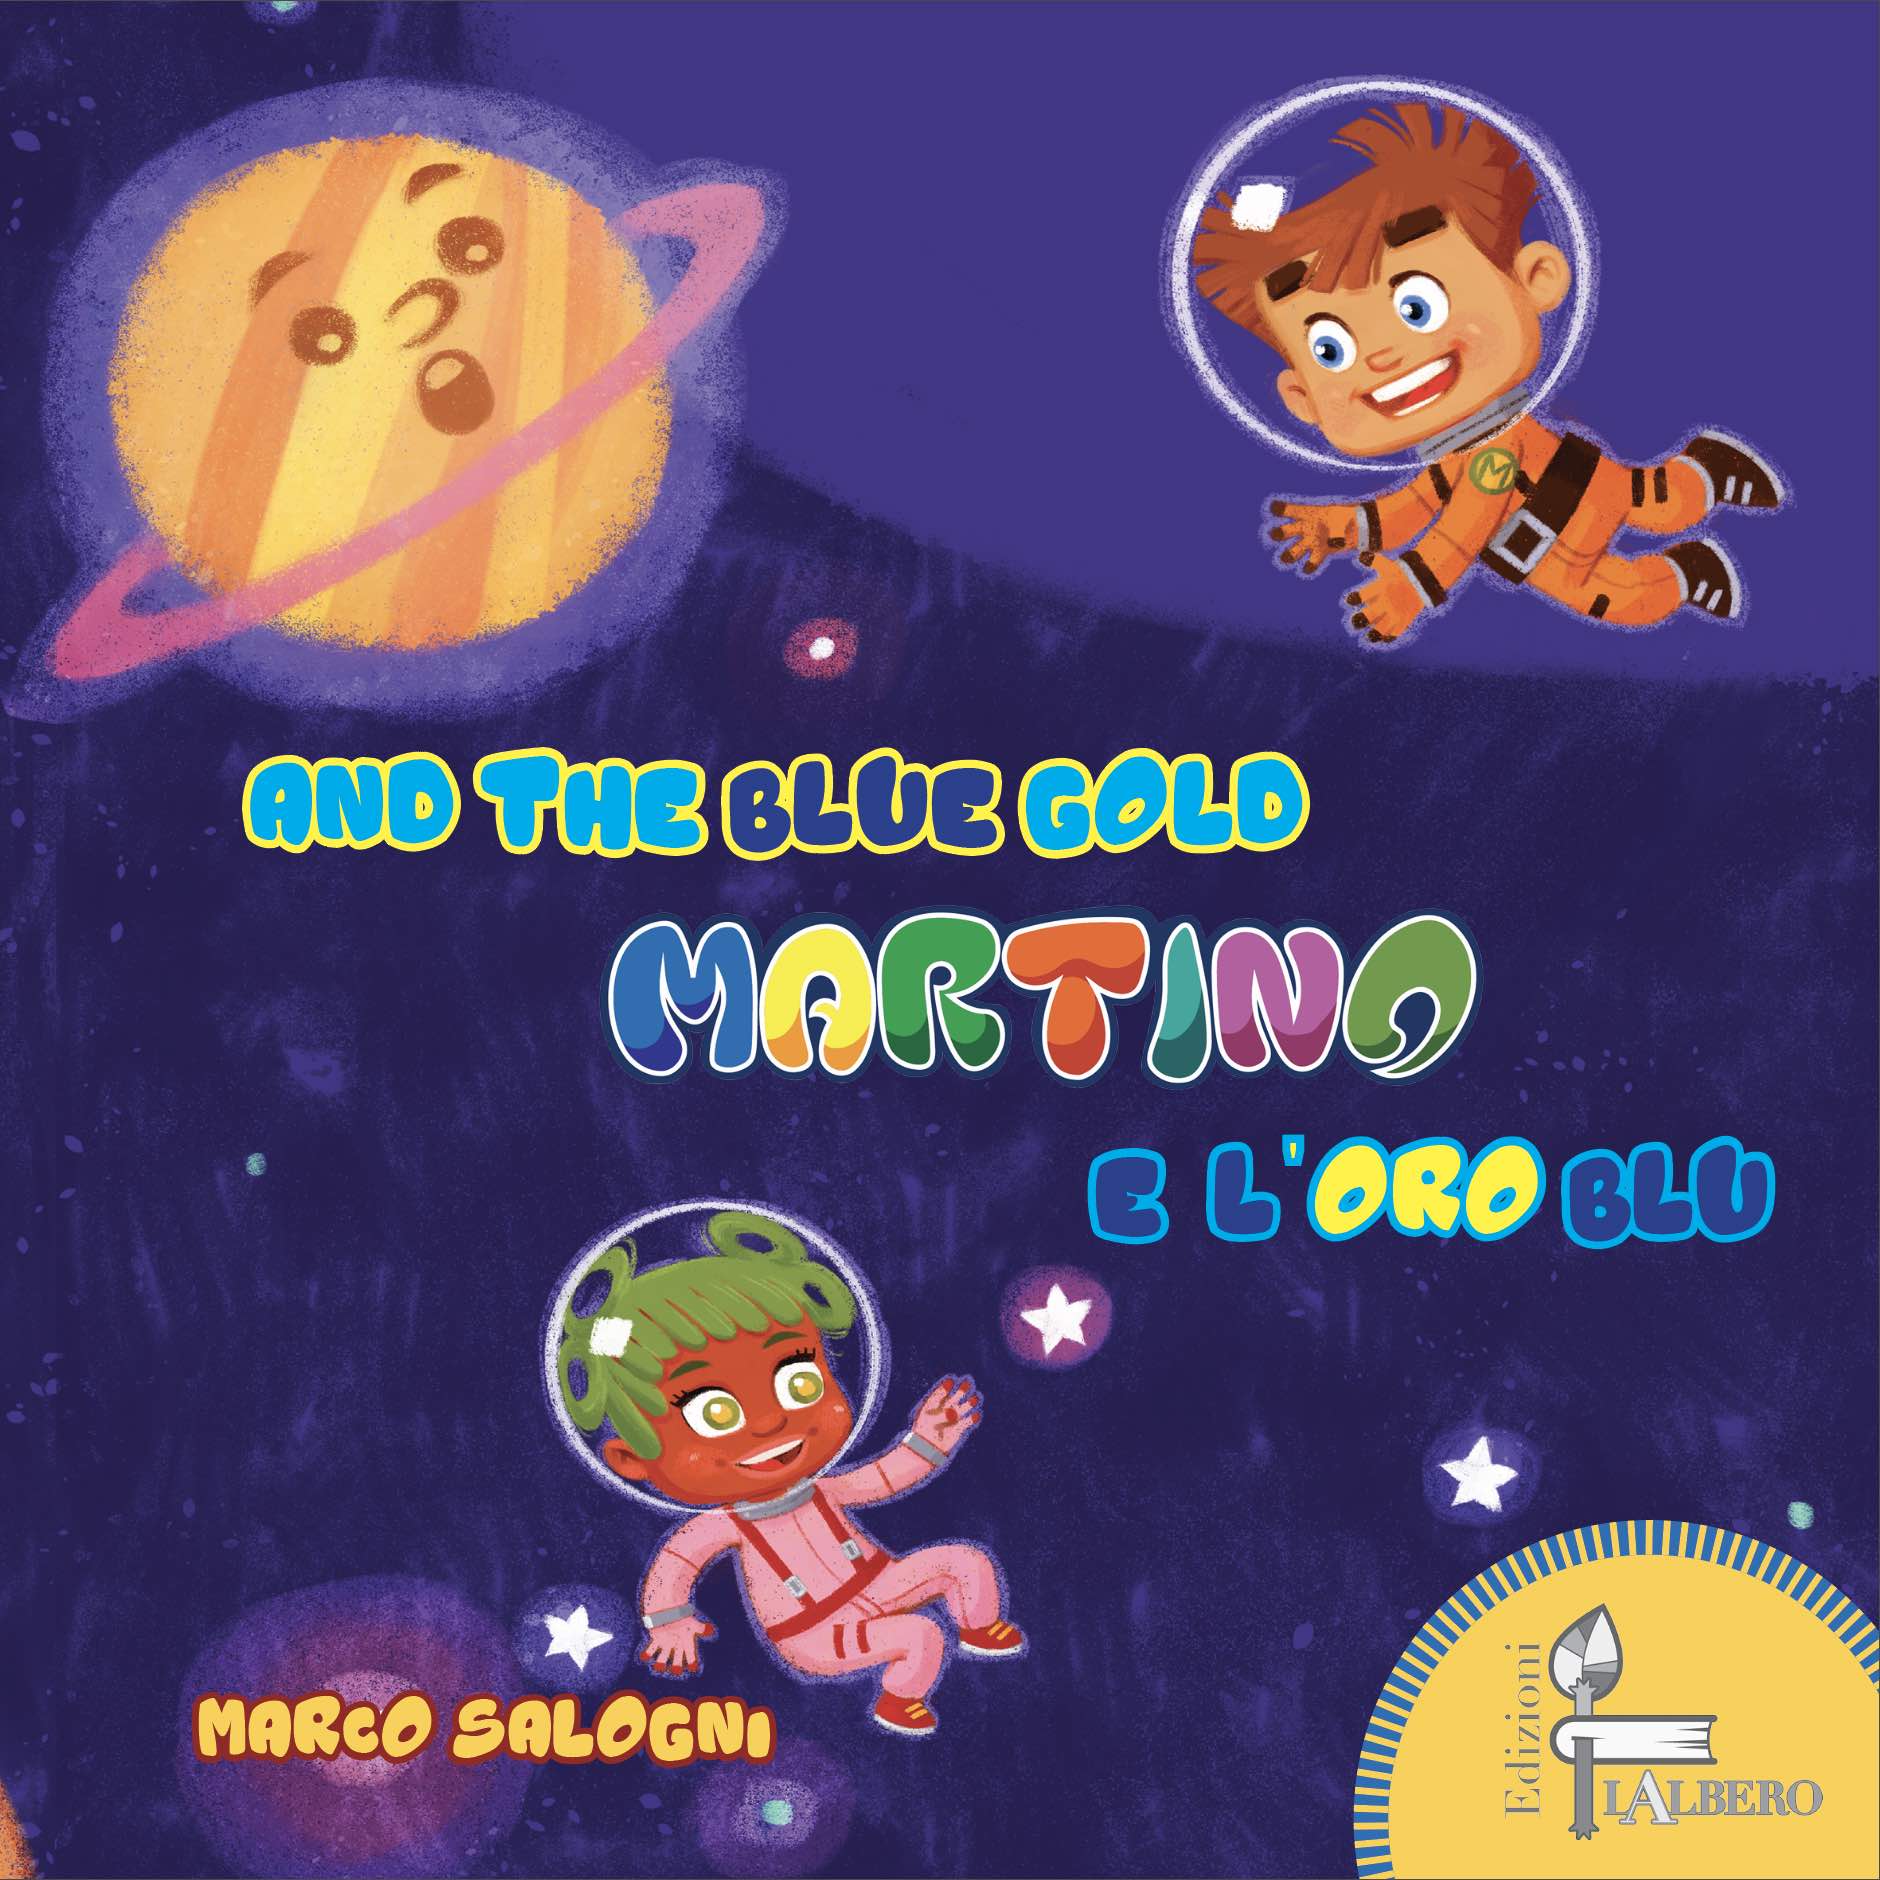 Il terzo libro delle avventure di Martino, edito da Edizioni lalbero.